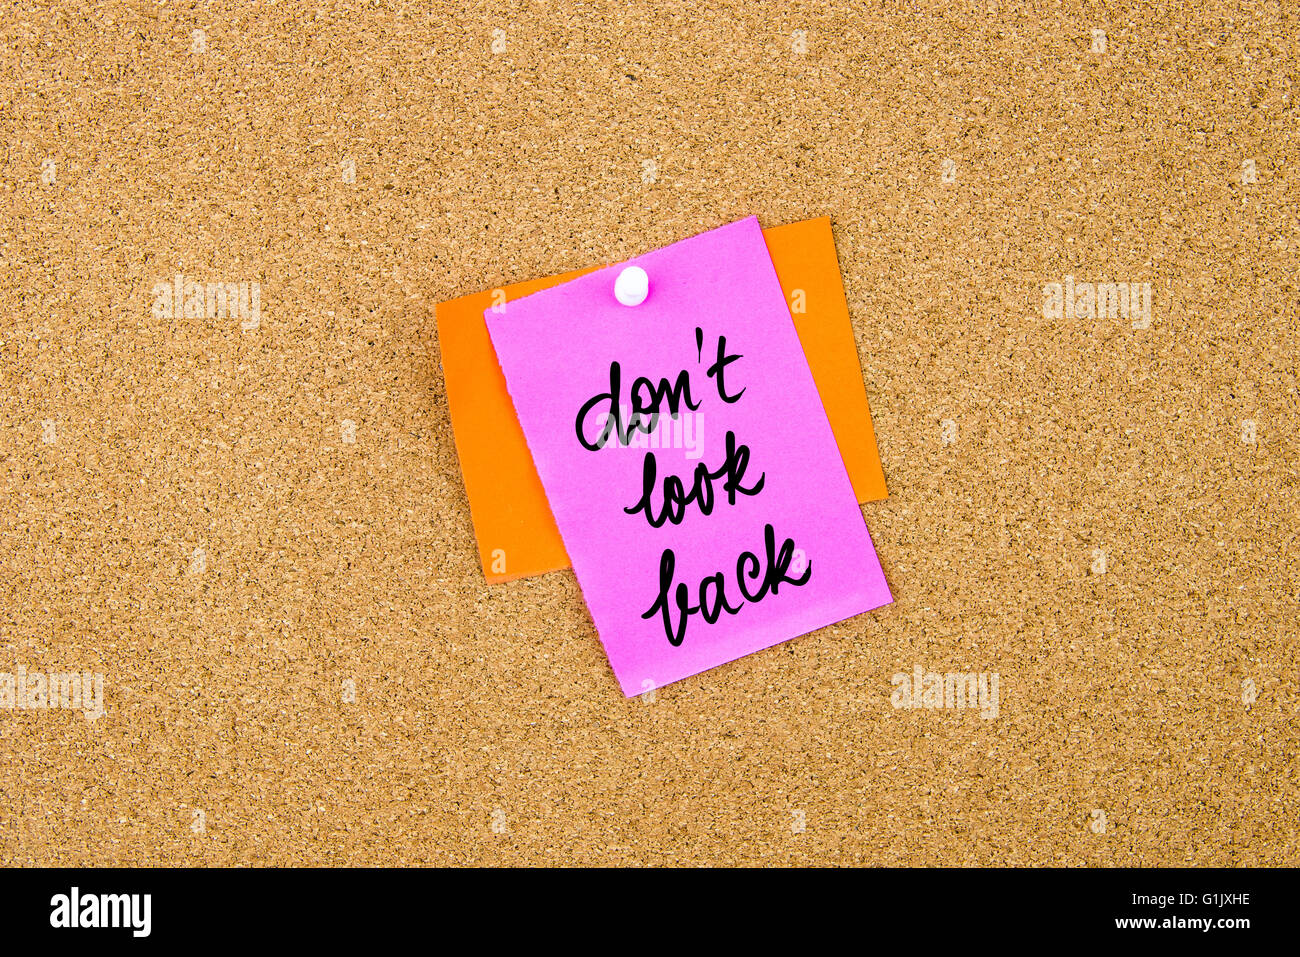 Non guardare indietro scritto su carta nota appuntata sulla bacheca di sughero con la puntina bianca, copia dello spazio disponibile Foto Stock